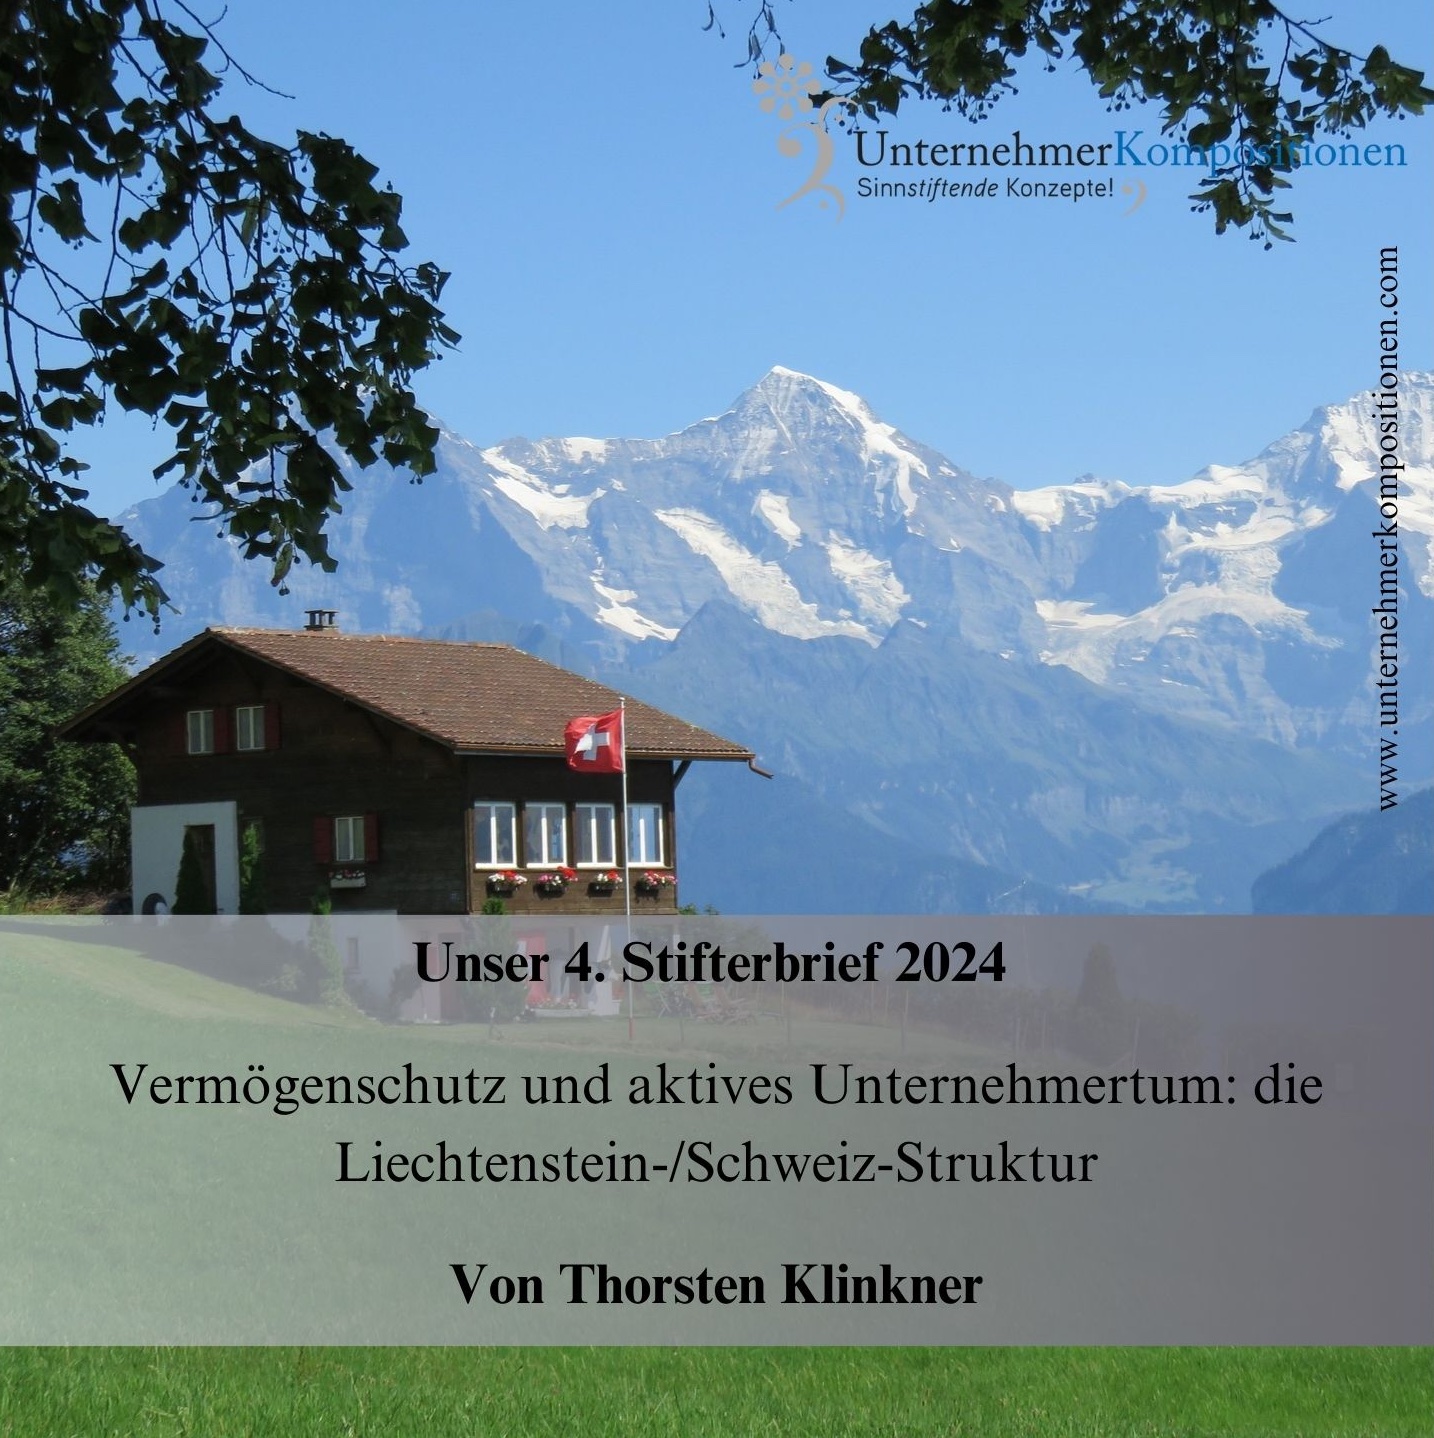 Vermögensschutz und aktives Unternehmertum: die Liechtenstein-/Schweiz-Struktur